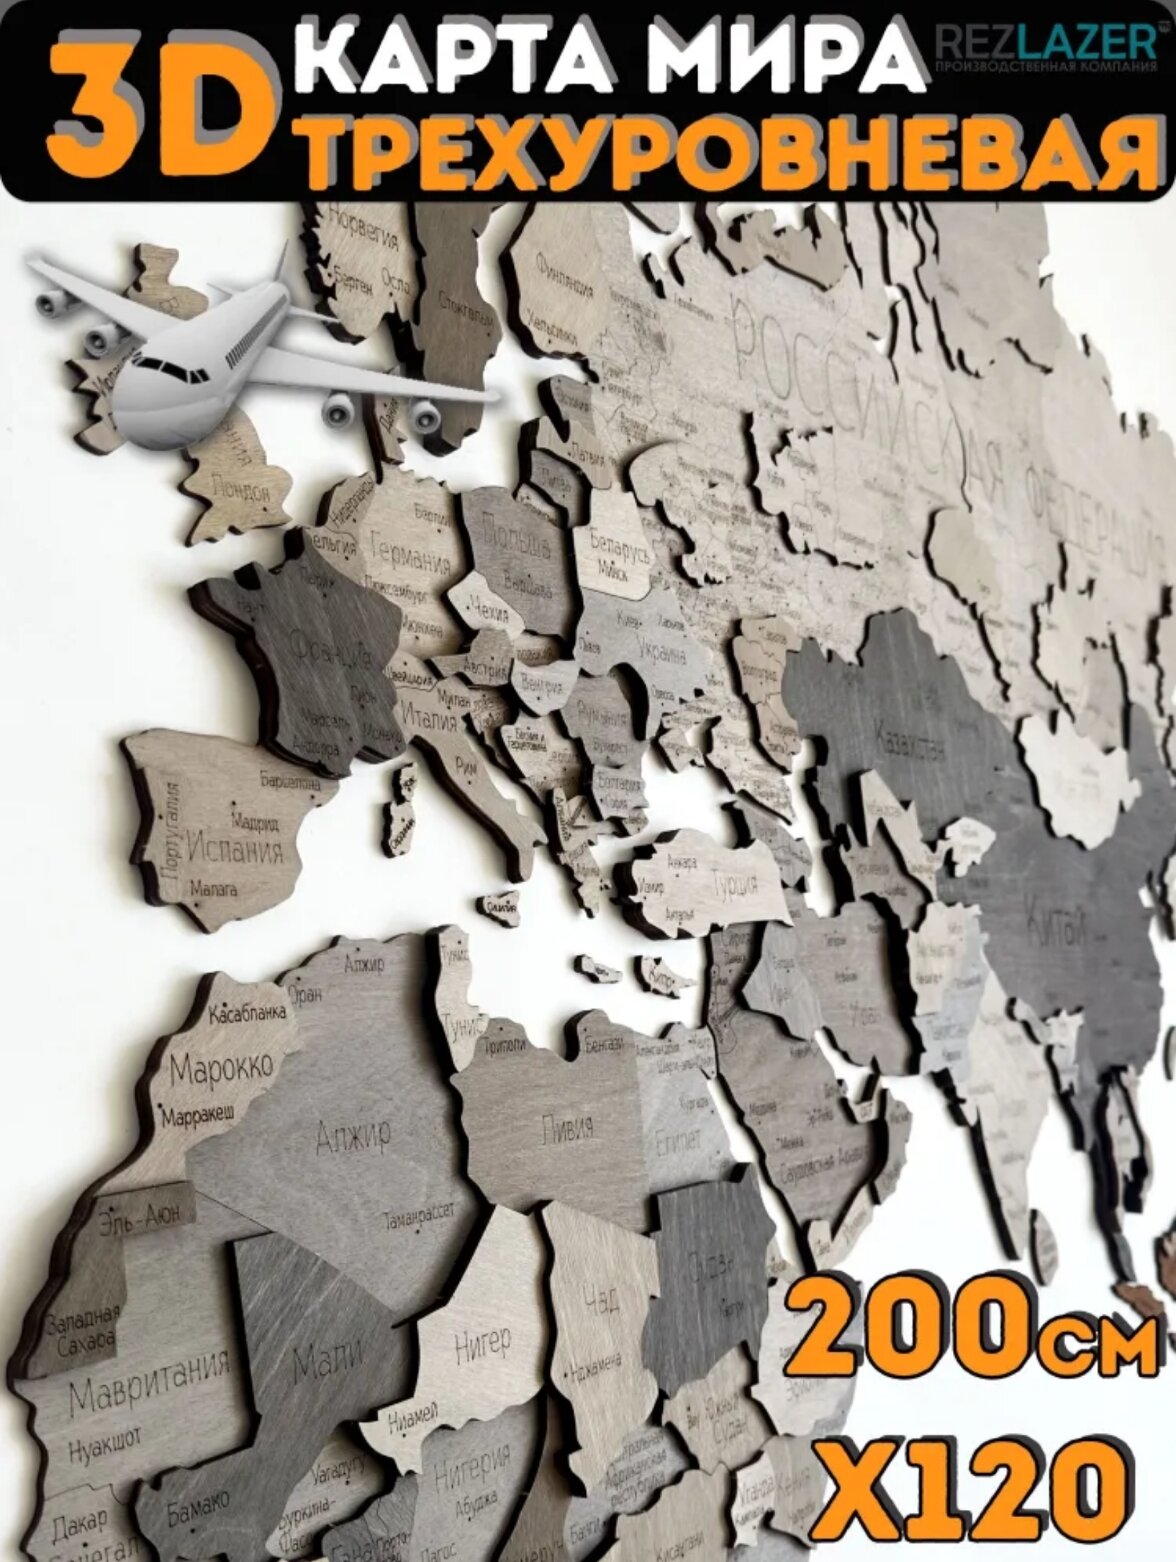 Карта мира из дерева 200х120, см/ Географическая карта мира/ Декорация настенная/Многоуровневая Карта мира из дерева/Карта мира 3D/Rezlazer/Grey